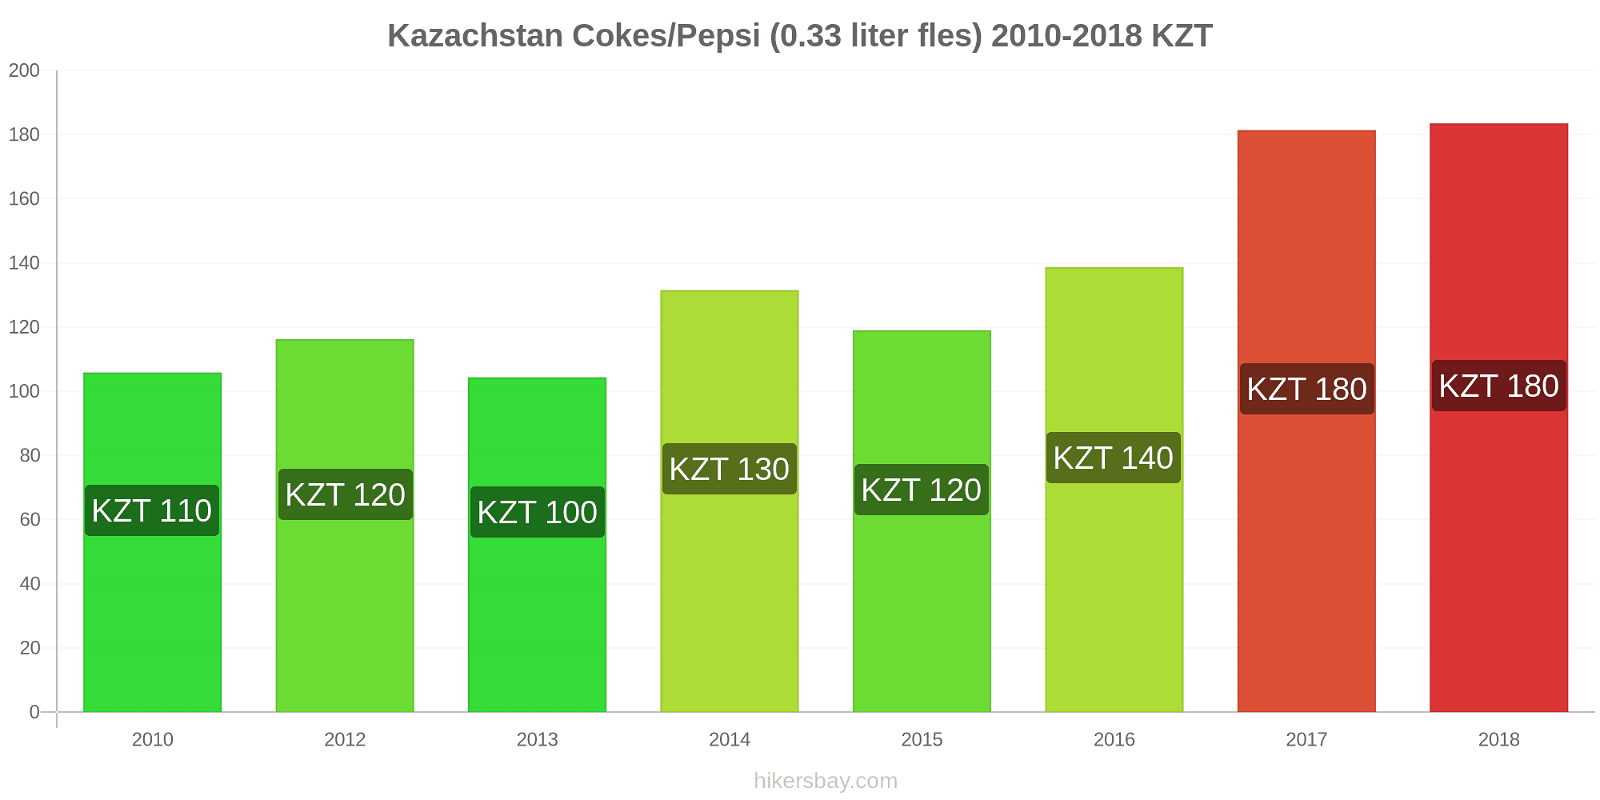 Kazachstan prijswijzigingen Coca-Cola/Pepsi (0.33 liter fles) hikersbay.com